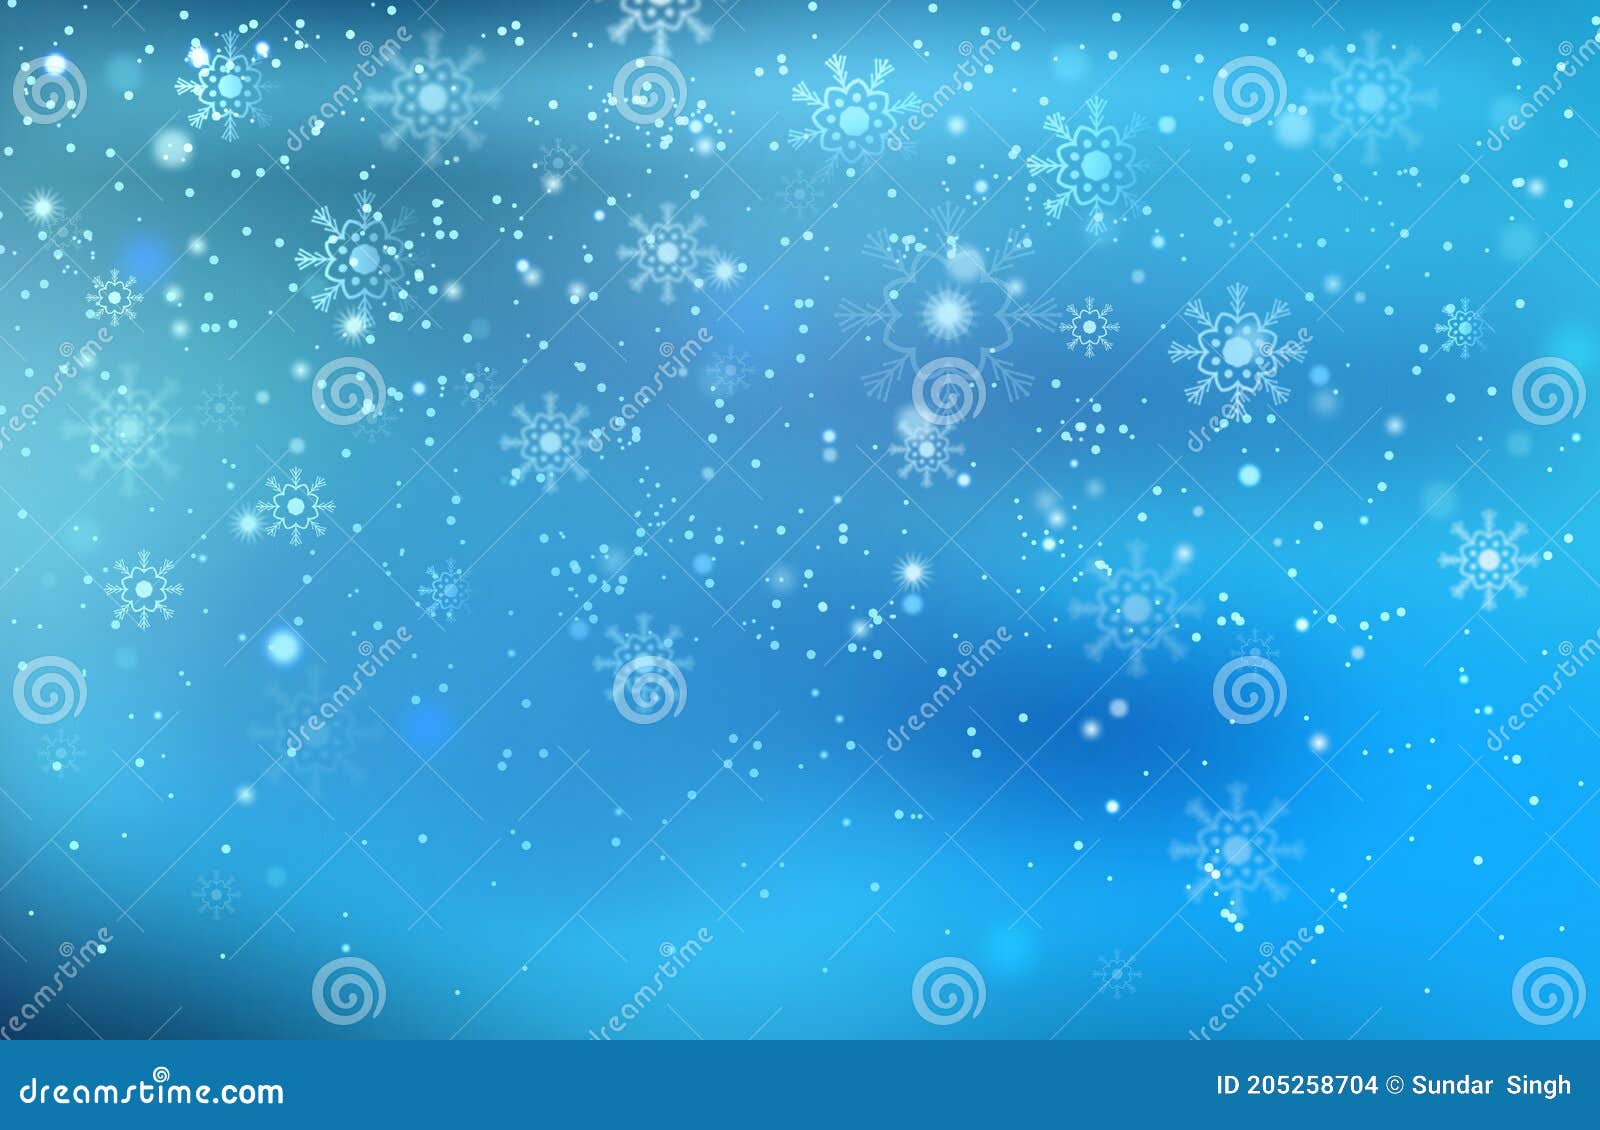 Hình nền Giáng sinh màu xanh trừu tượng đẹp sẽ khiến cho bức ảnh của bạn nổi bật hơn trong mùa lễ hội. Với nét đặc trưng chủ đạo là màu xanh cùng với họa tiết tuyệt đẹp của tuyết rơi và cây thông, hình nền này sẽ khiến cho bức ảnh của bạn trở nên lung linh và rực rỡ.